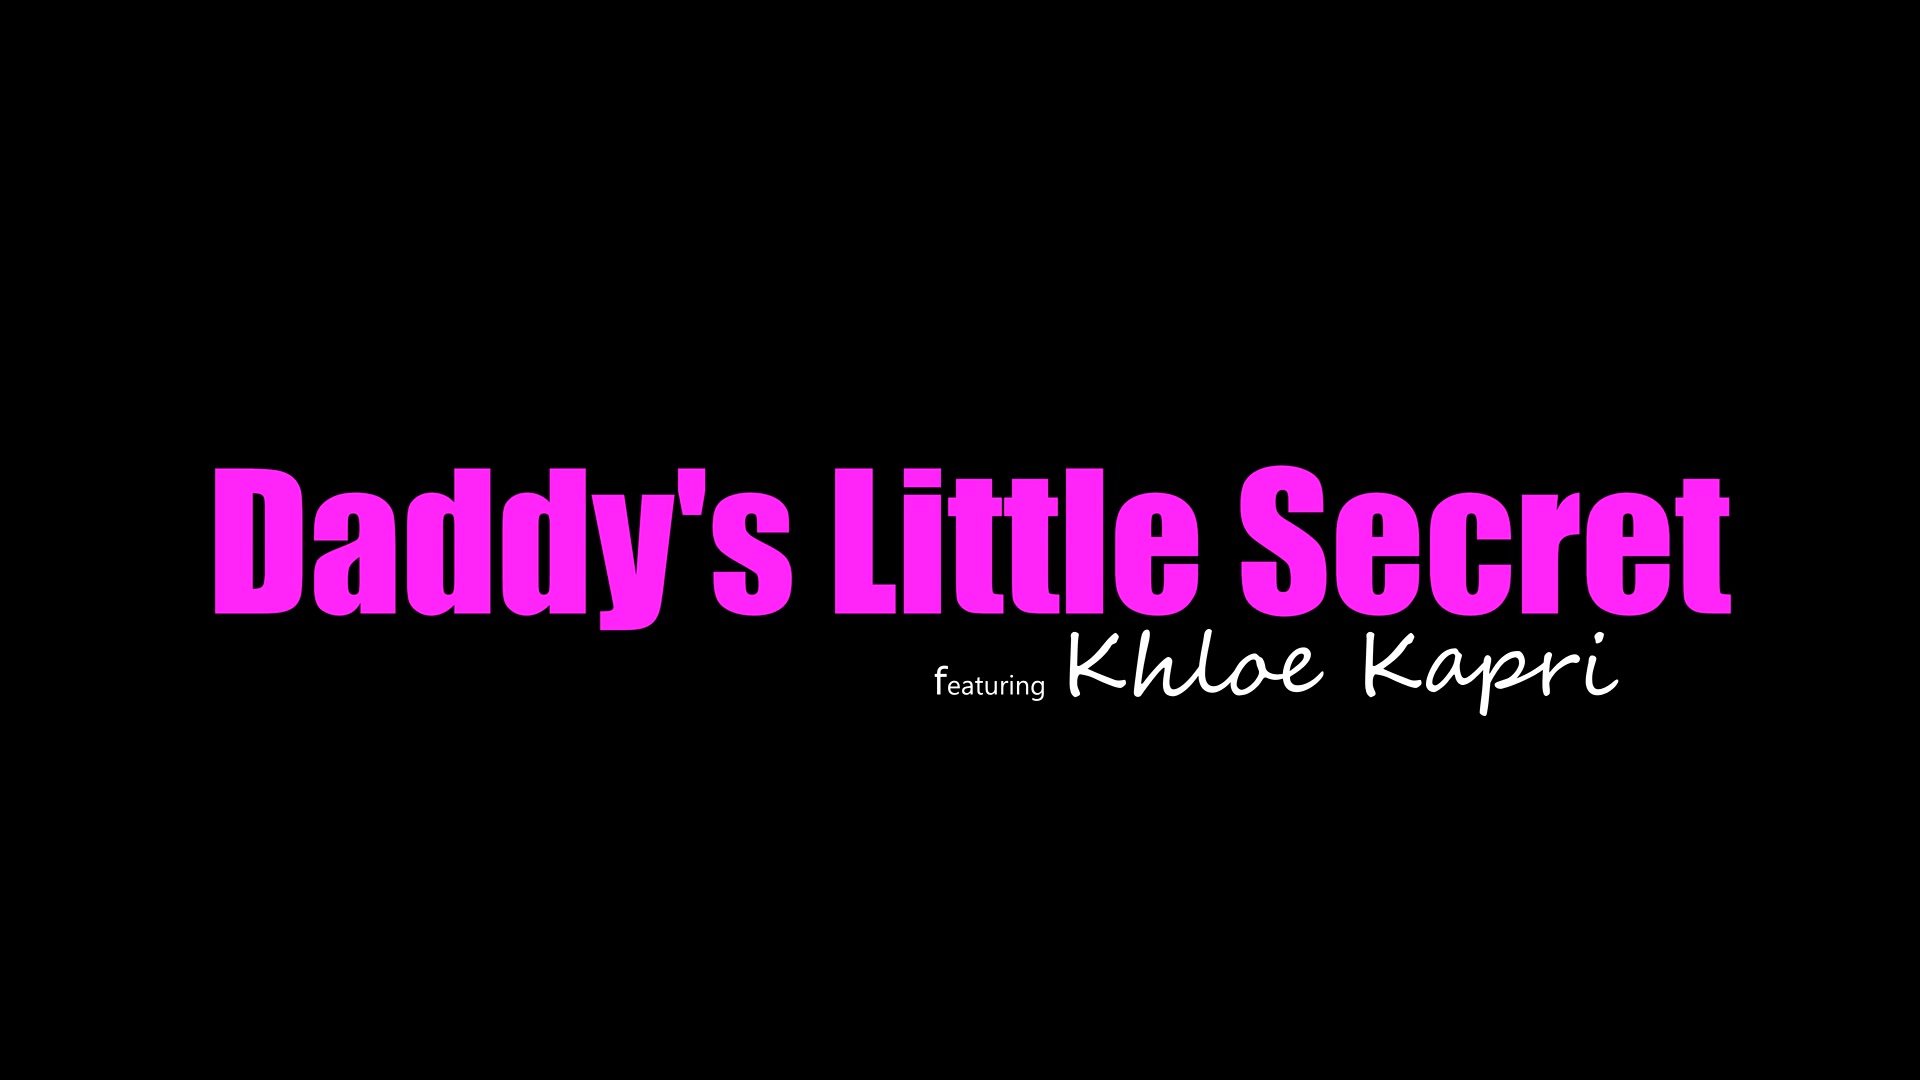 Khloe Kapri - Daddys Little Secret